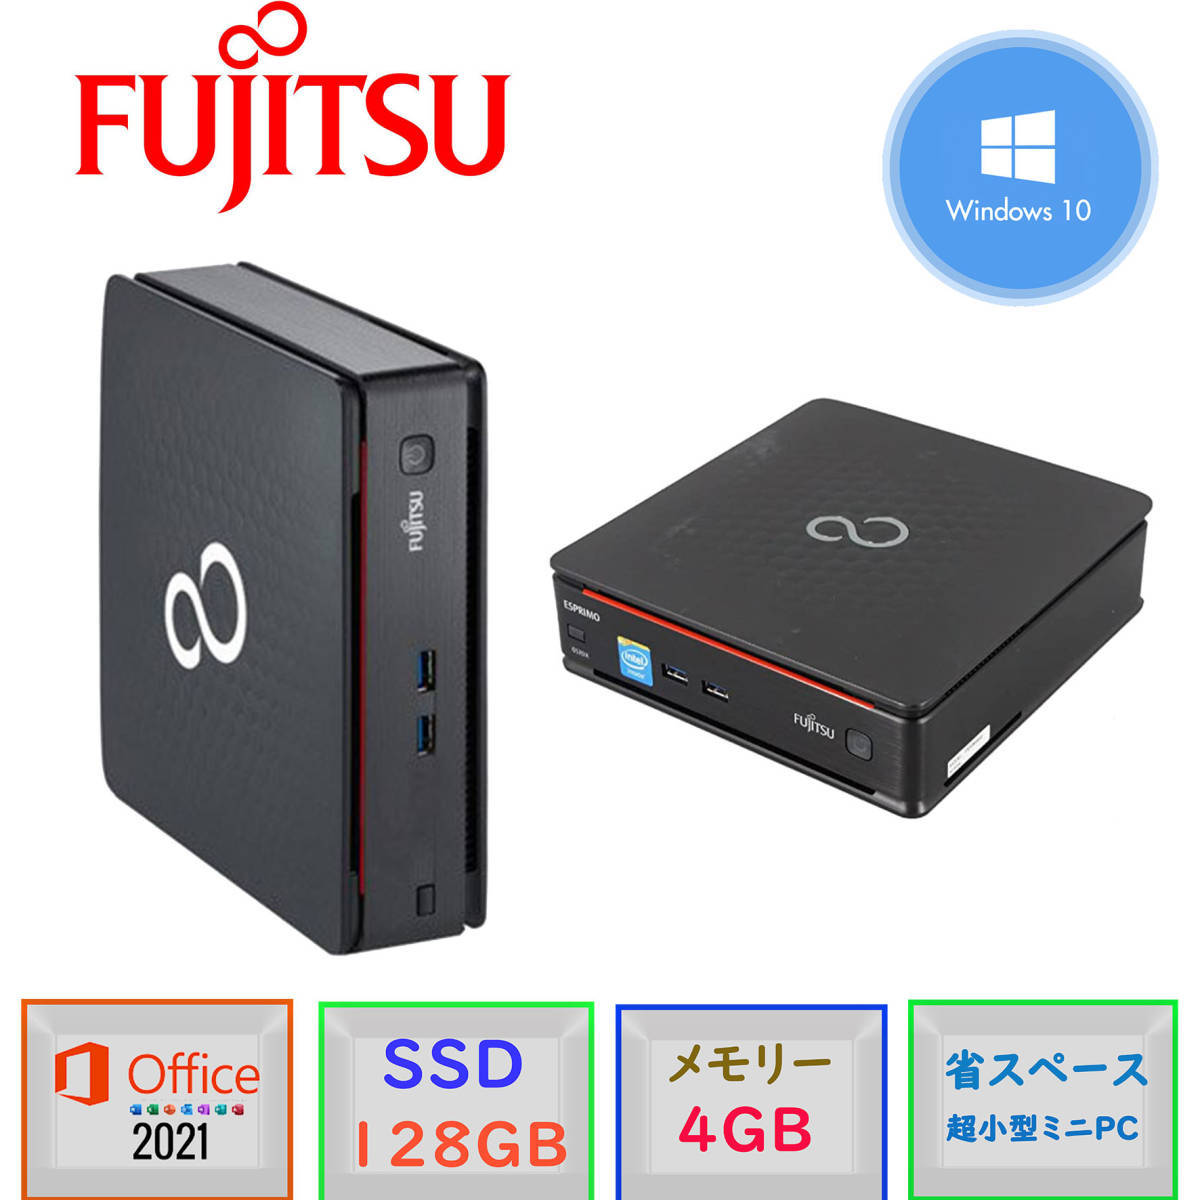 殿堂 FUJITSU office2021 PC/メモリ4GB/SSD128GB/Win10Pro64bit/Microsoft MINI 省スペース小型 爆速起動 ESPRIMO (木) /Celeron-G1840T Q520/K パソコン単体